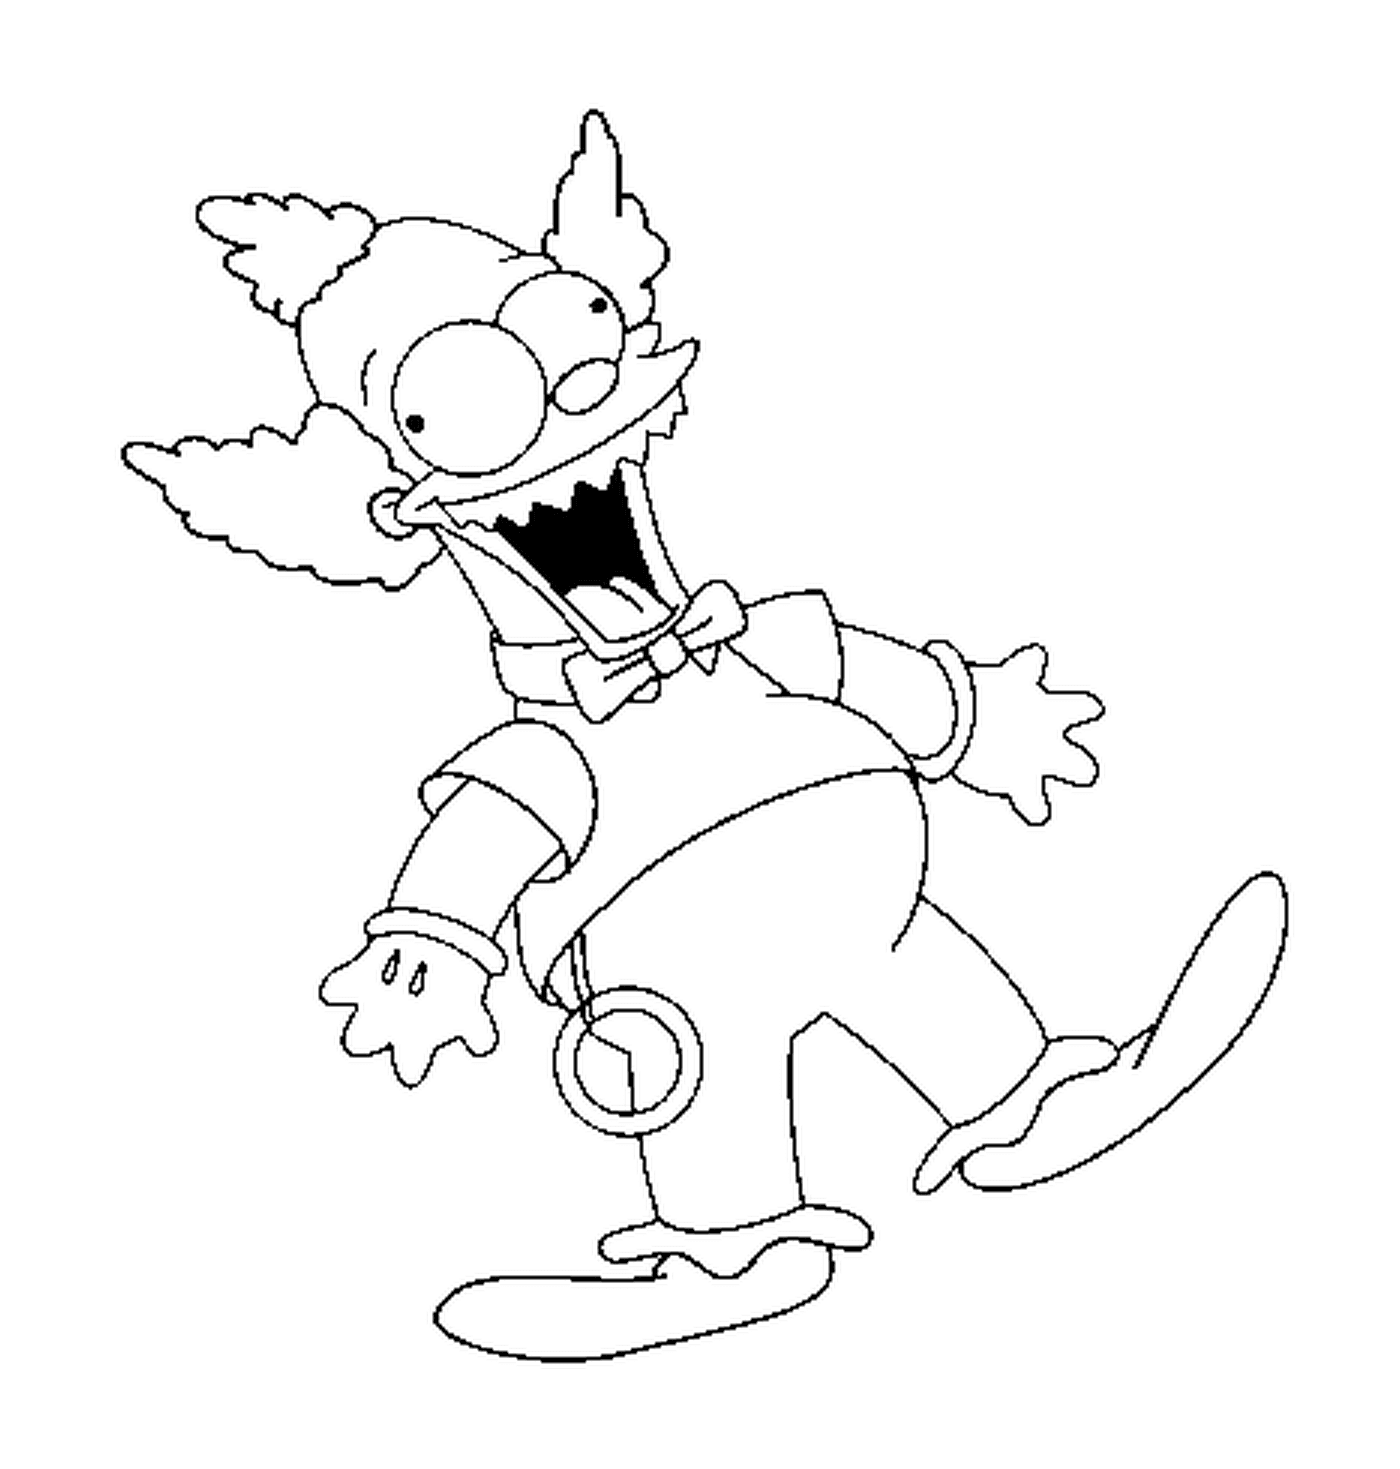 coloriage dessin simpson poupee Krusty